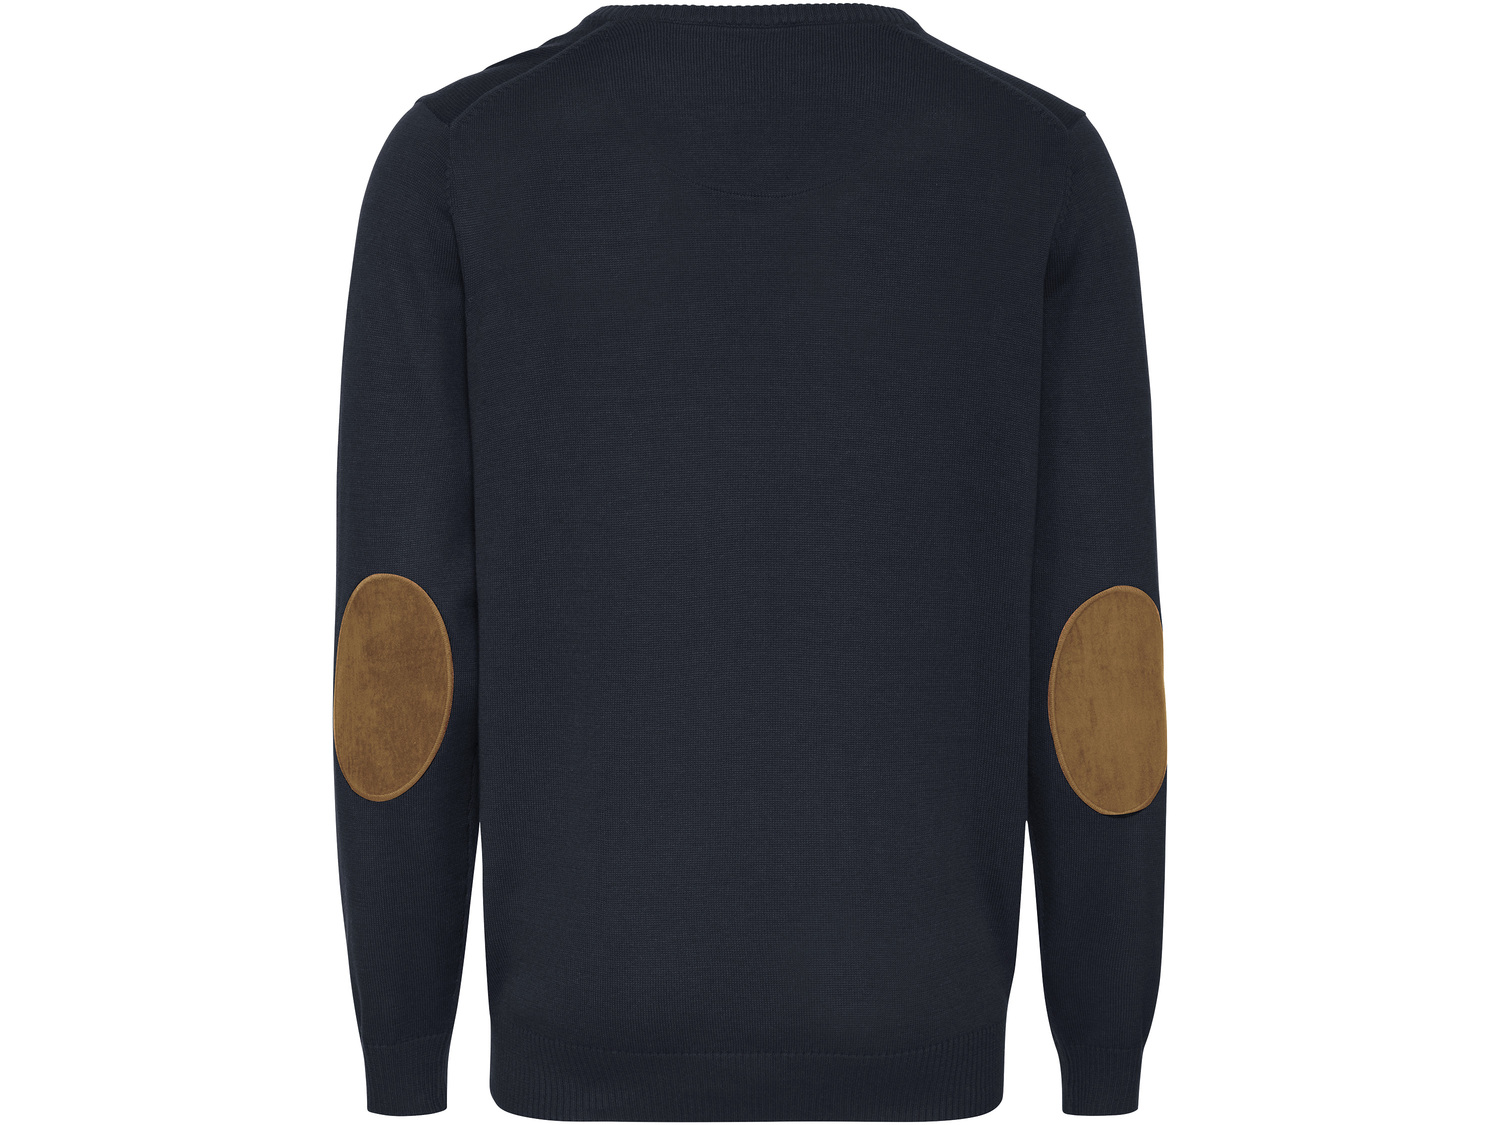 Sweter męski Livergy, cena 34,99 PLN 
- 50% bawełny, 50% poliakrylu
- rozmiary: ...